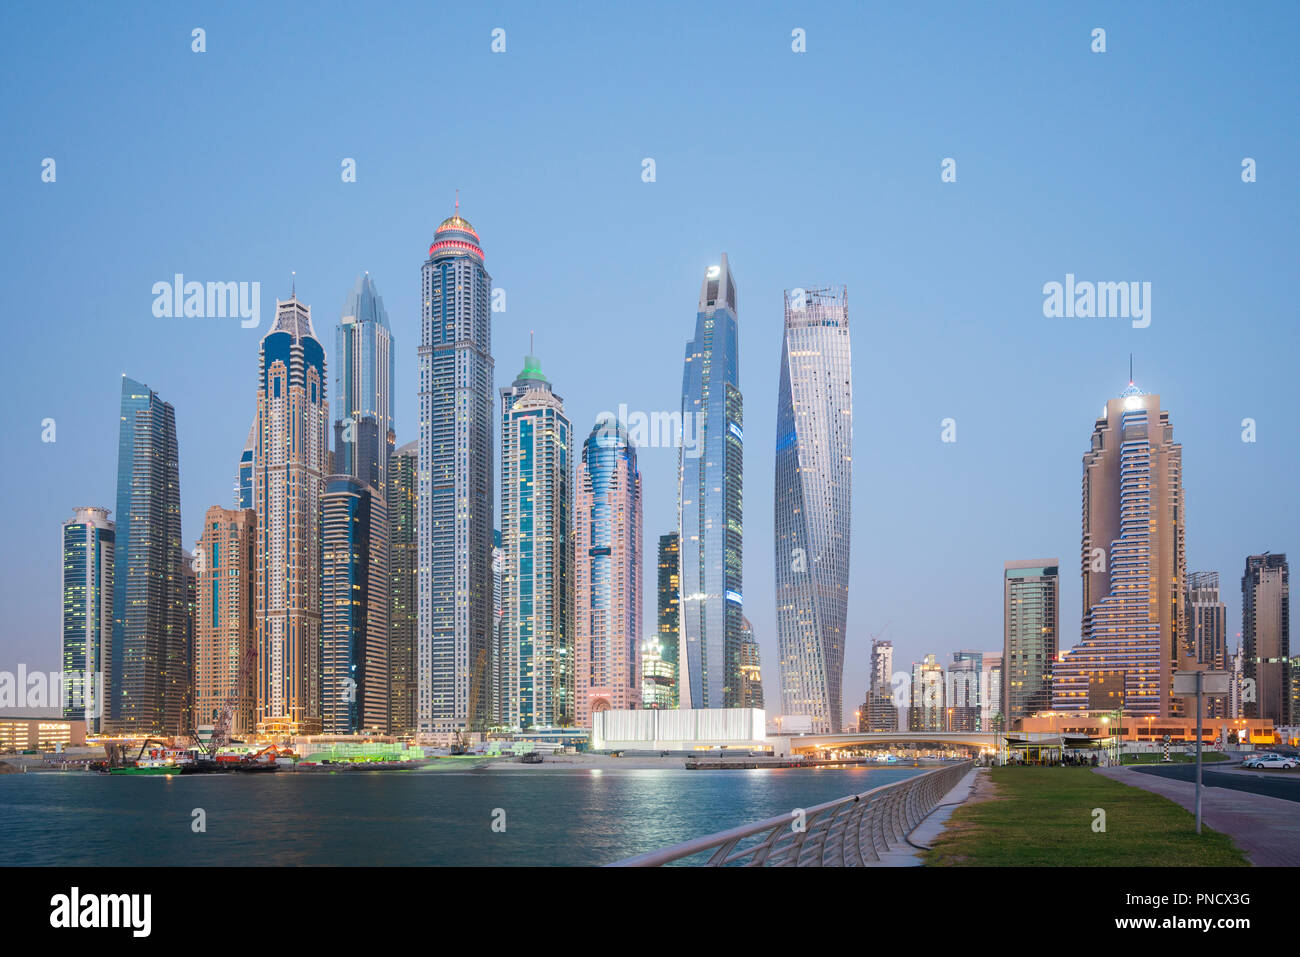 Viele high rise apartment Türme und Wolkenkratzer in der Dämmerung im Marina District von Dubai, VAE, Vereinigte Arabische Emirate. Stockfoto